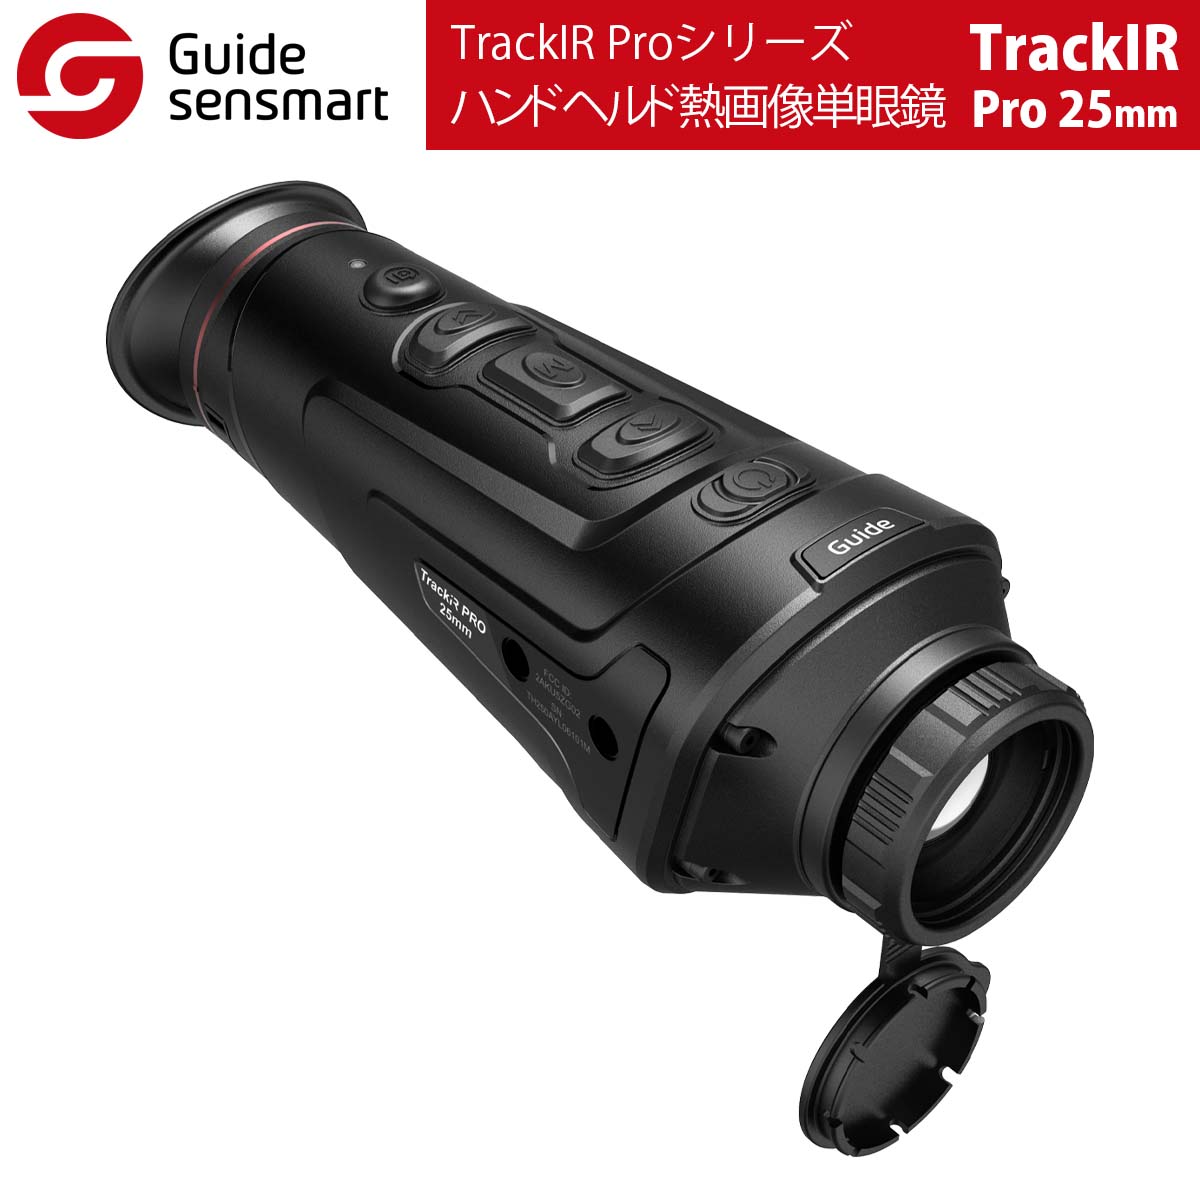 TrackIRシリーズ、TrackIR Proシリーズは、プロのハンター向けに設計されたGuideの新しく発売されたハンドヘルド熱画像単眼鏡で、3つのオプションレンズ（IR：25 mm / 35 mm / 50 mm、IRPro：19 mm...